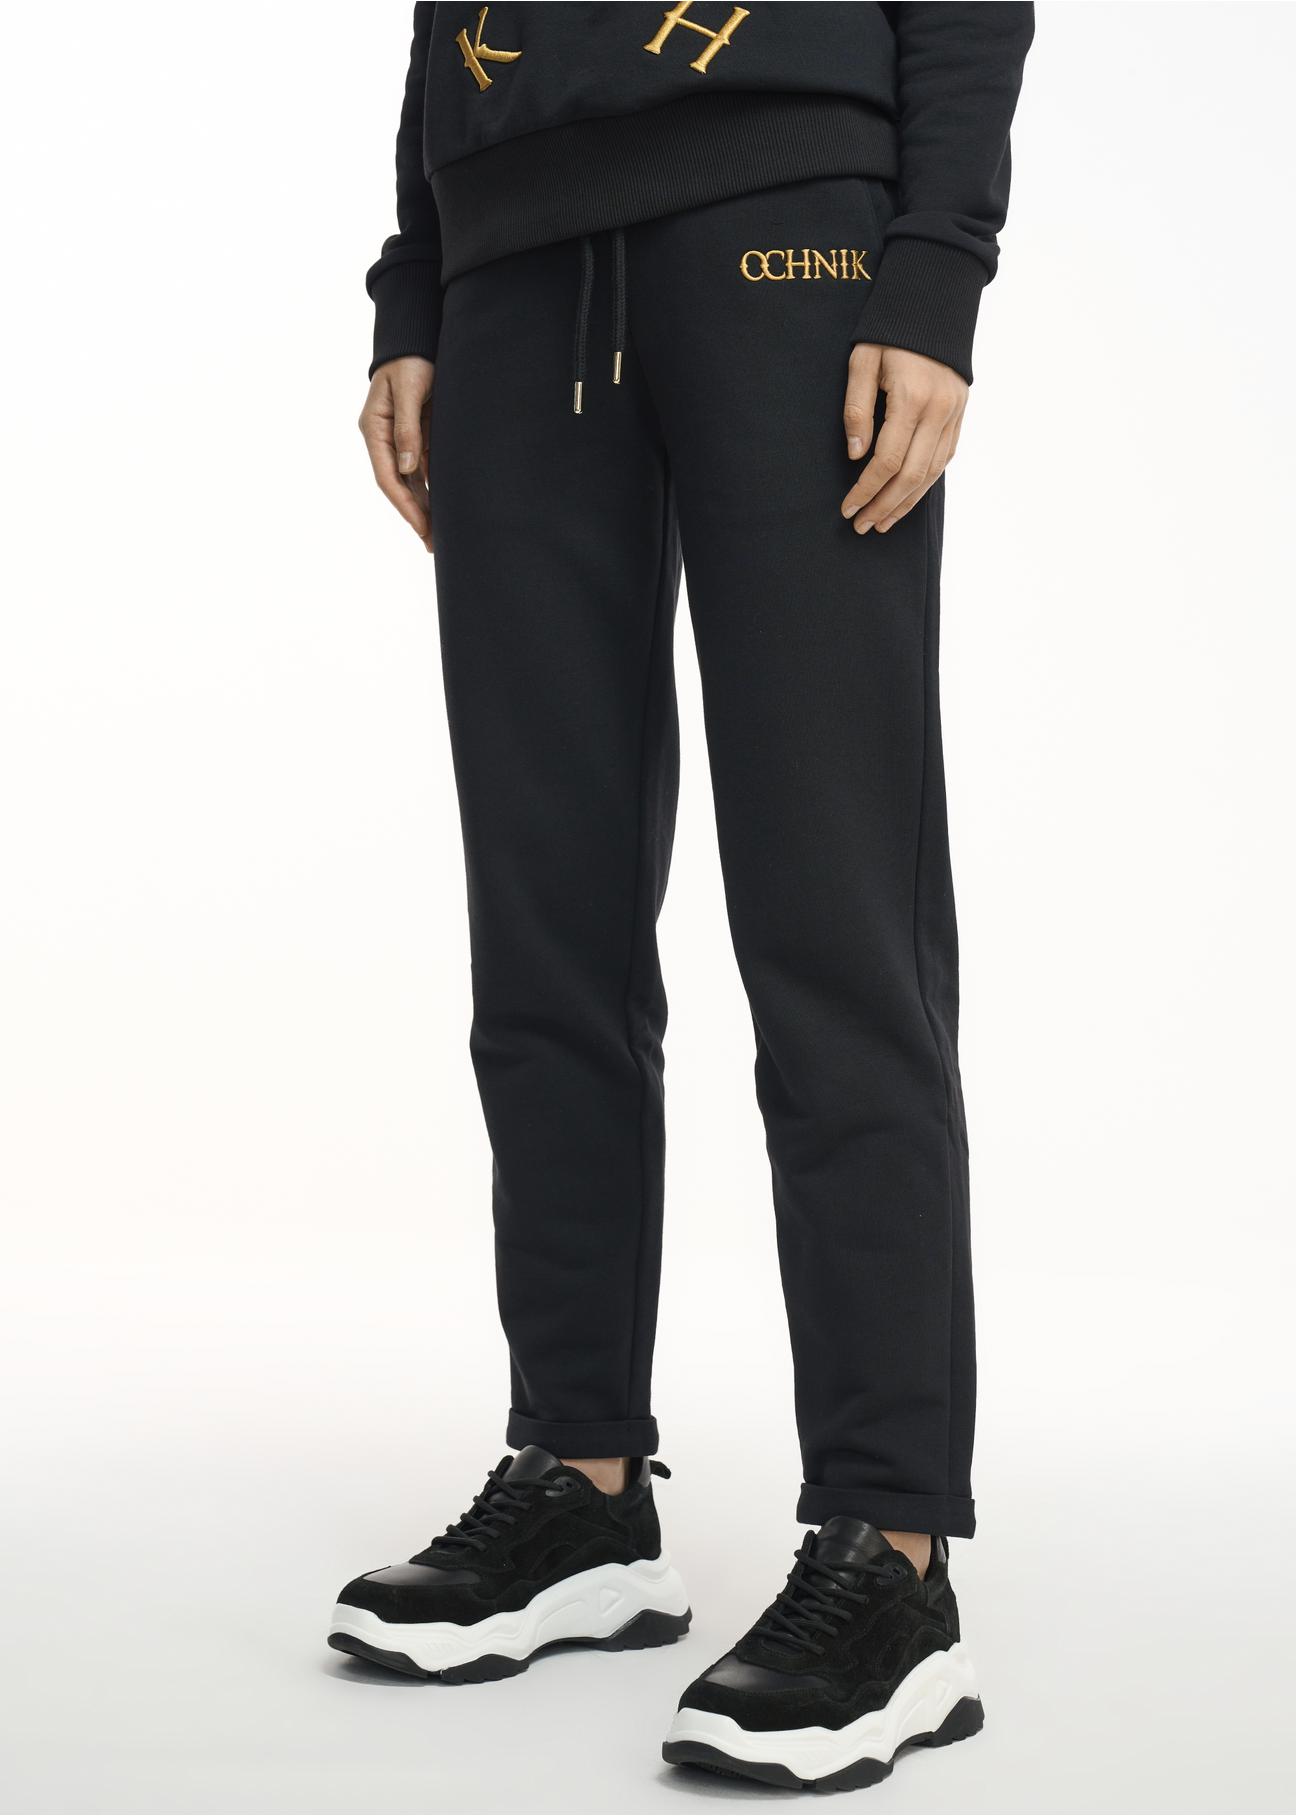 Czarne spodnie dresowe damskie SPODT-0065-99(Z22)